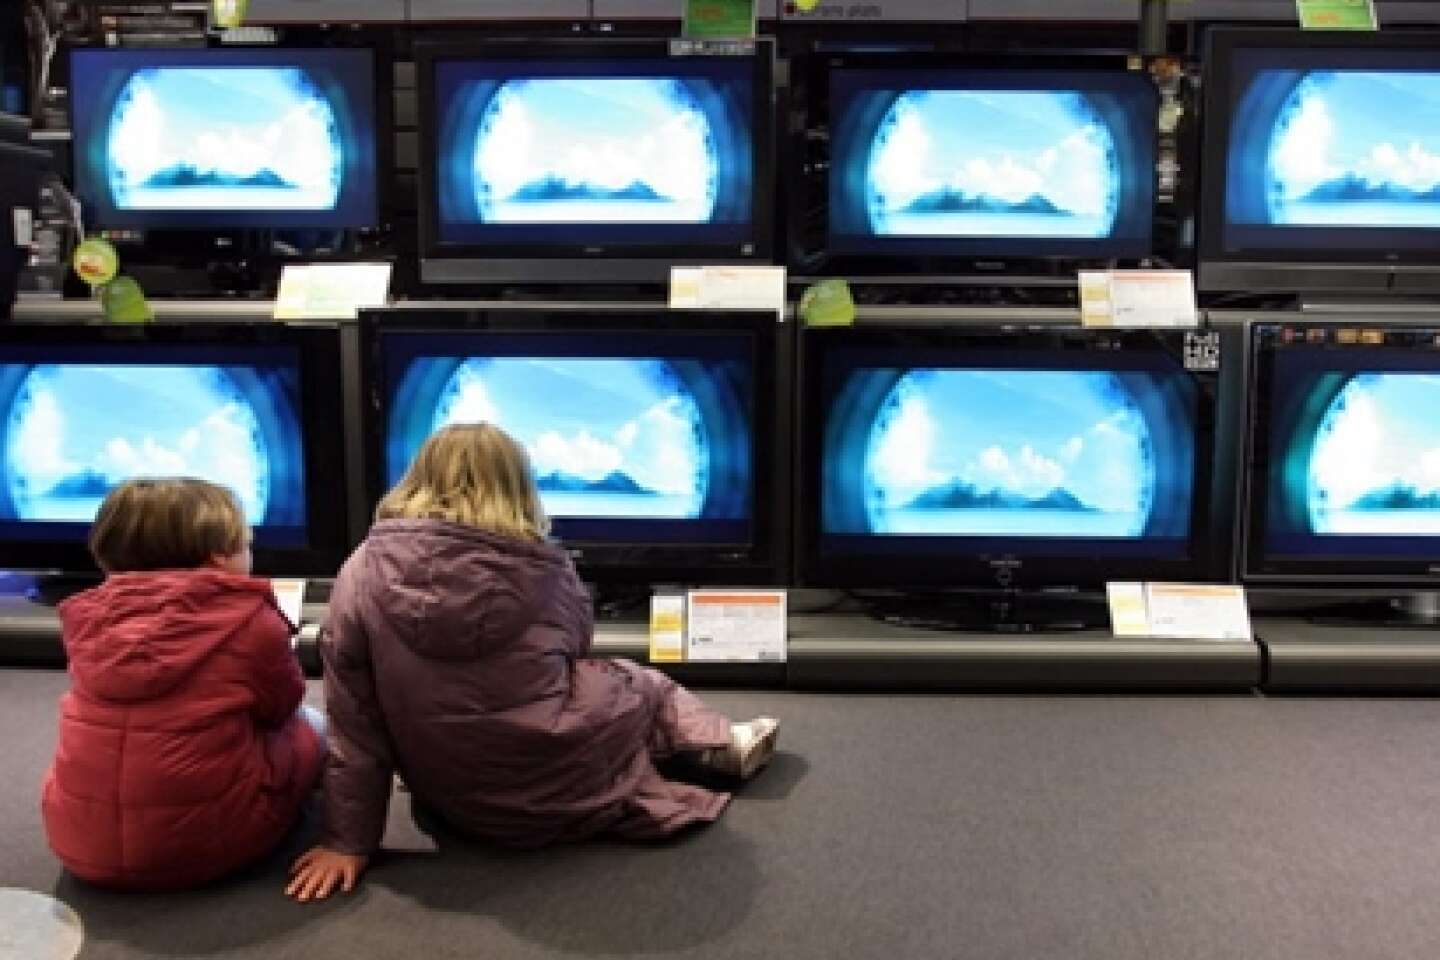 Enfant et télévision, à quel âge peut regarder la télé 